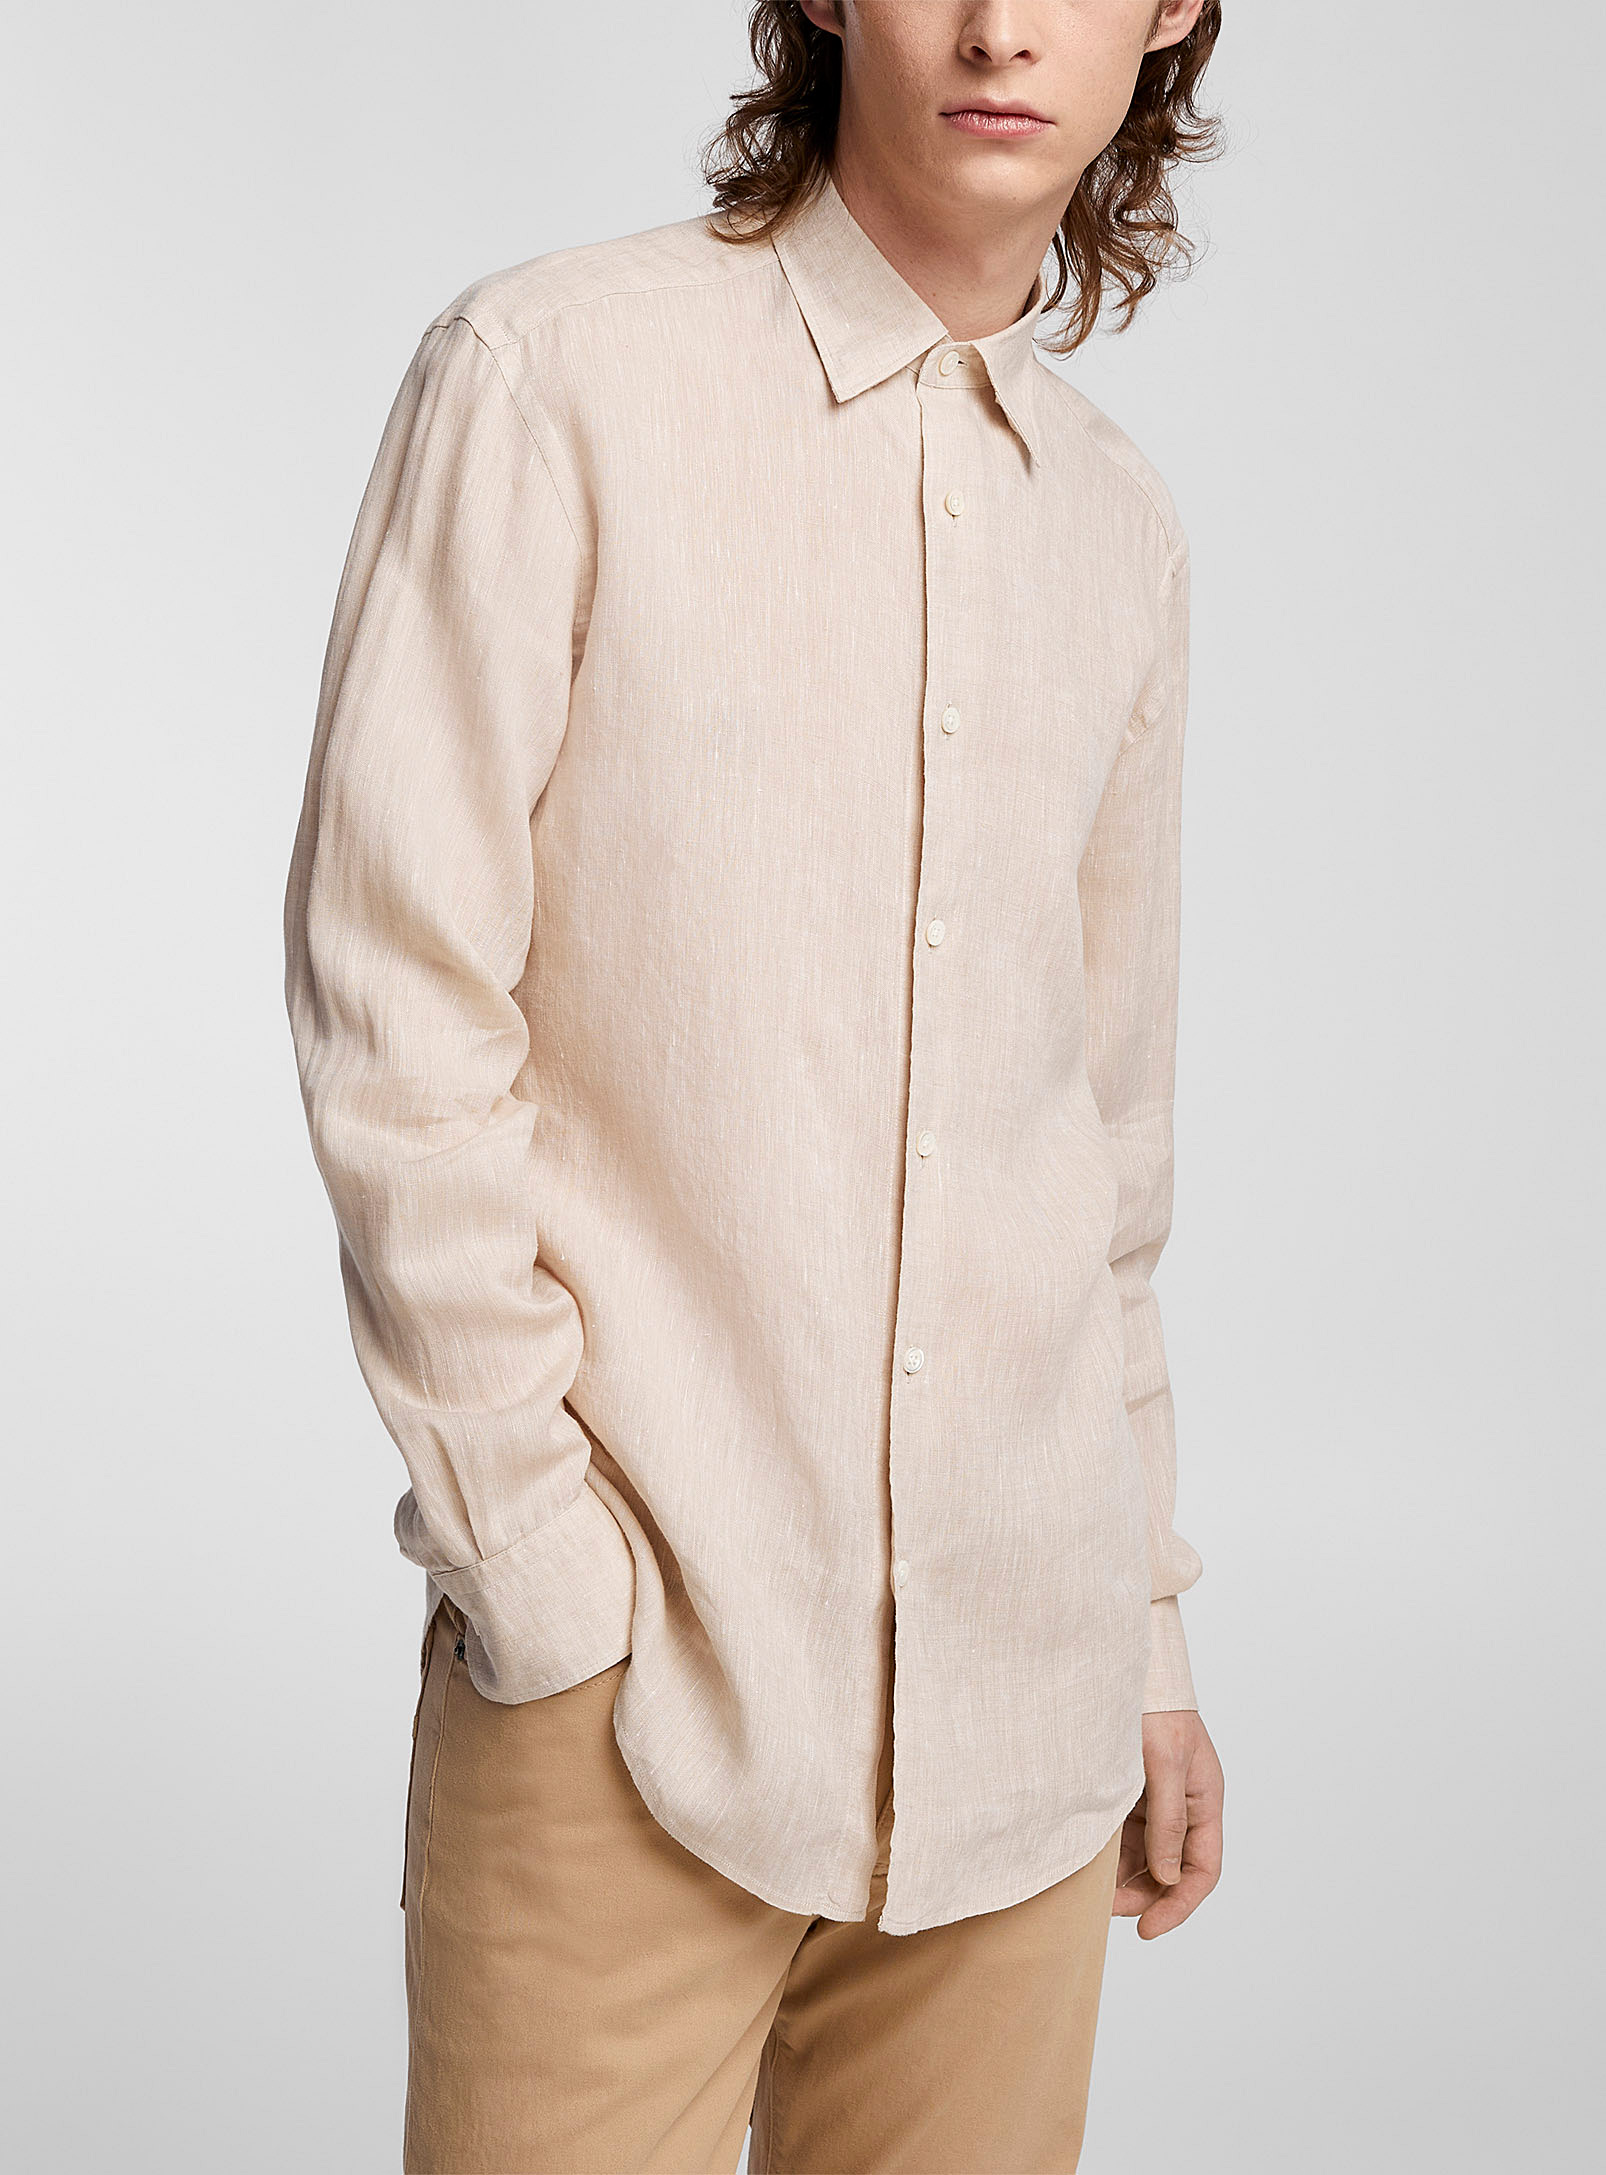 Zegna - La chemise chambray lin couleur sable